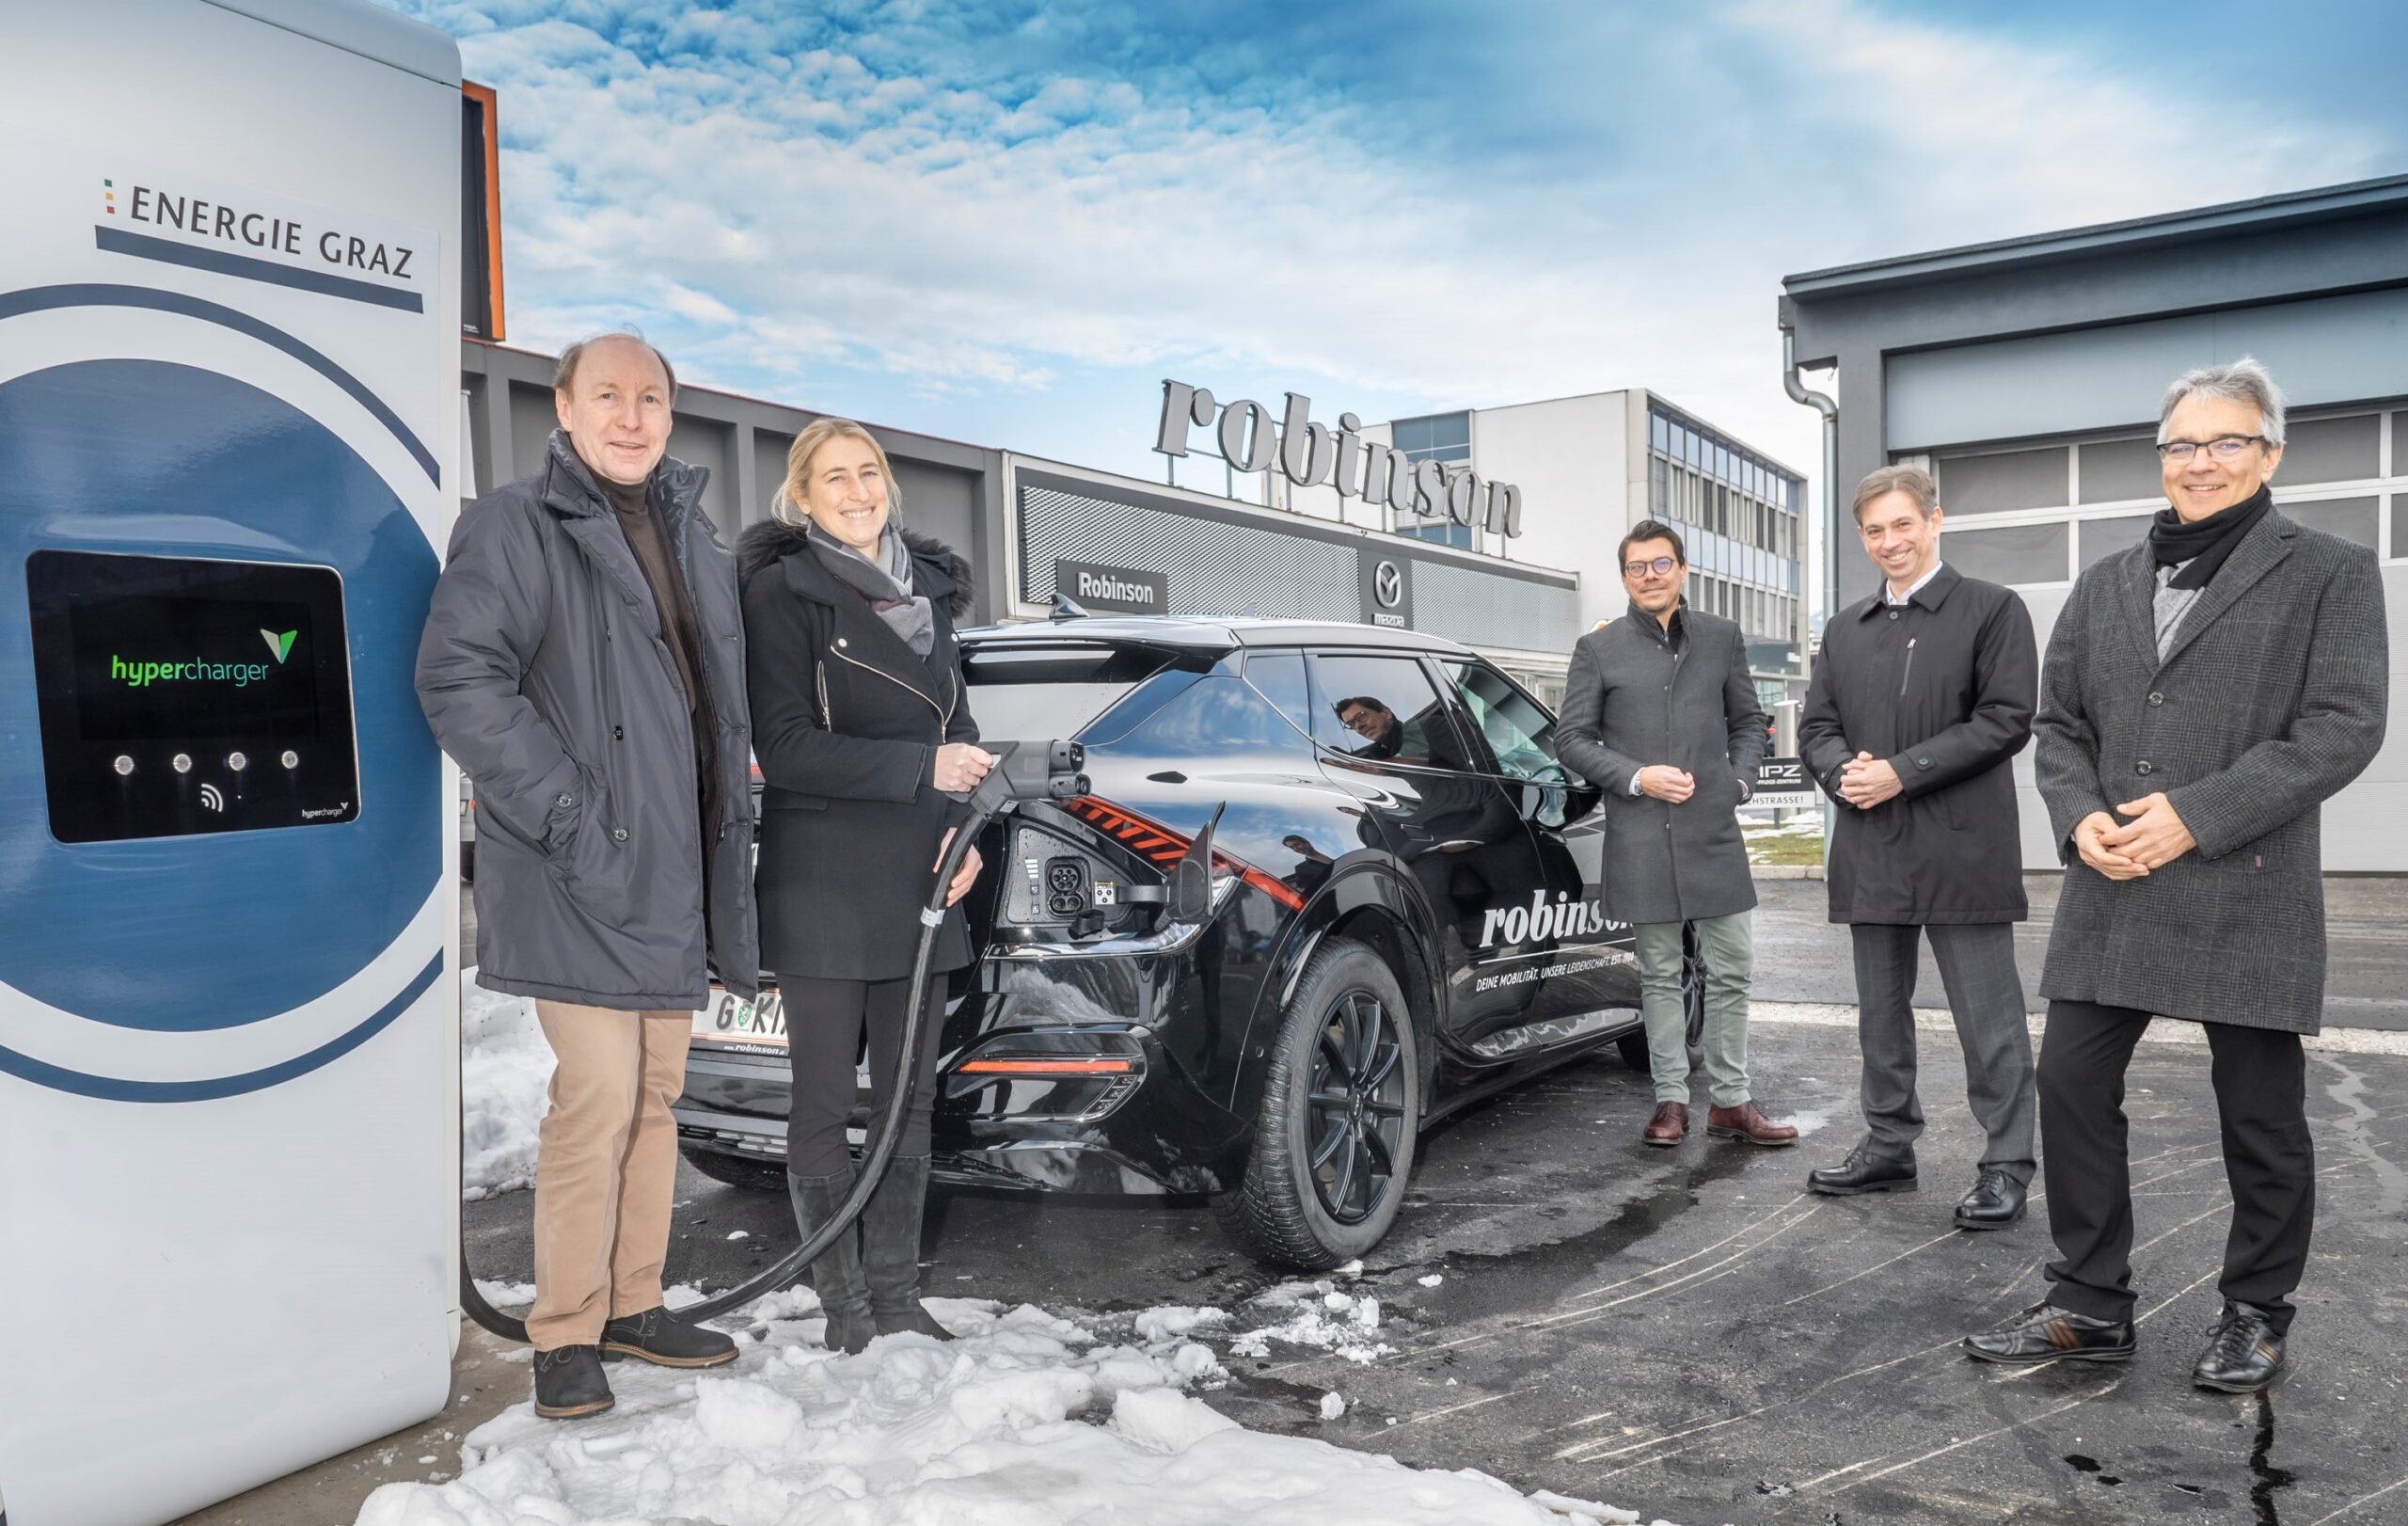 Erster High-Power-Charger-Standort der Energie Graz beim Autohaus Robinson